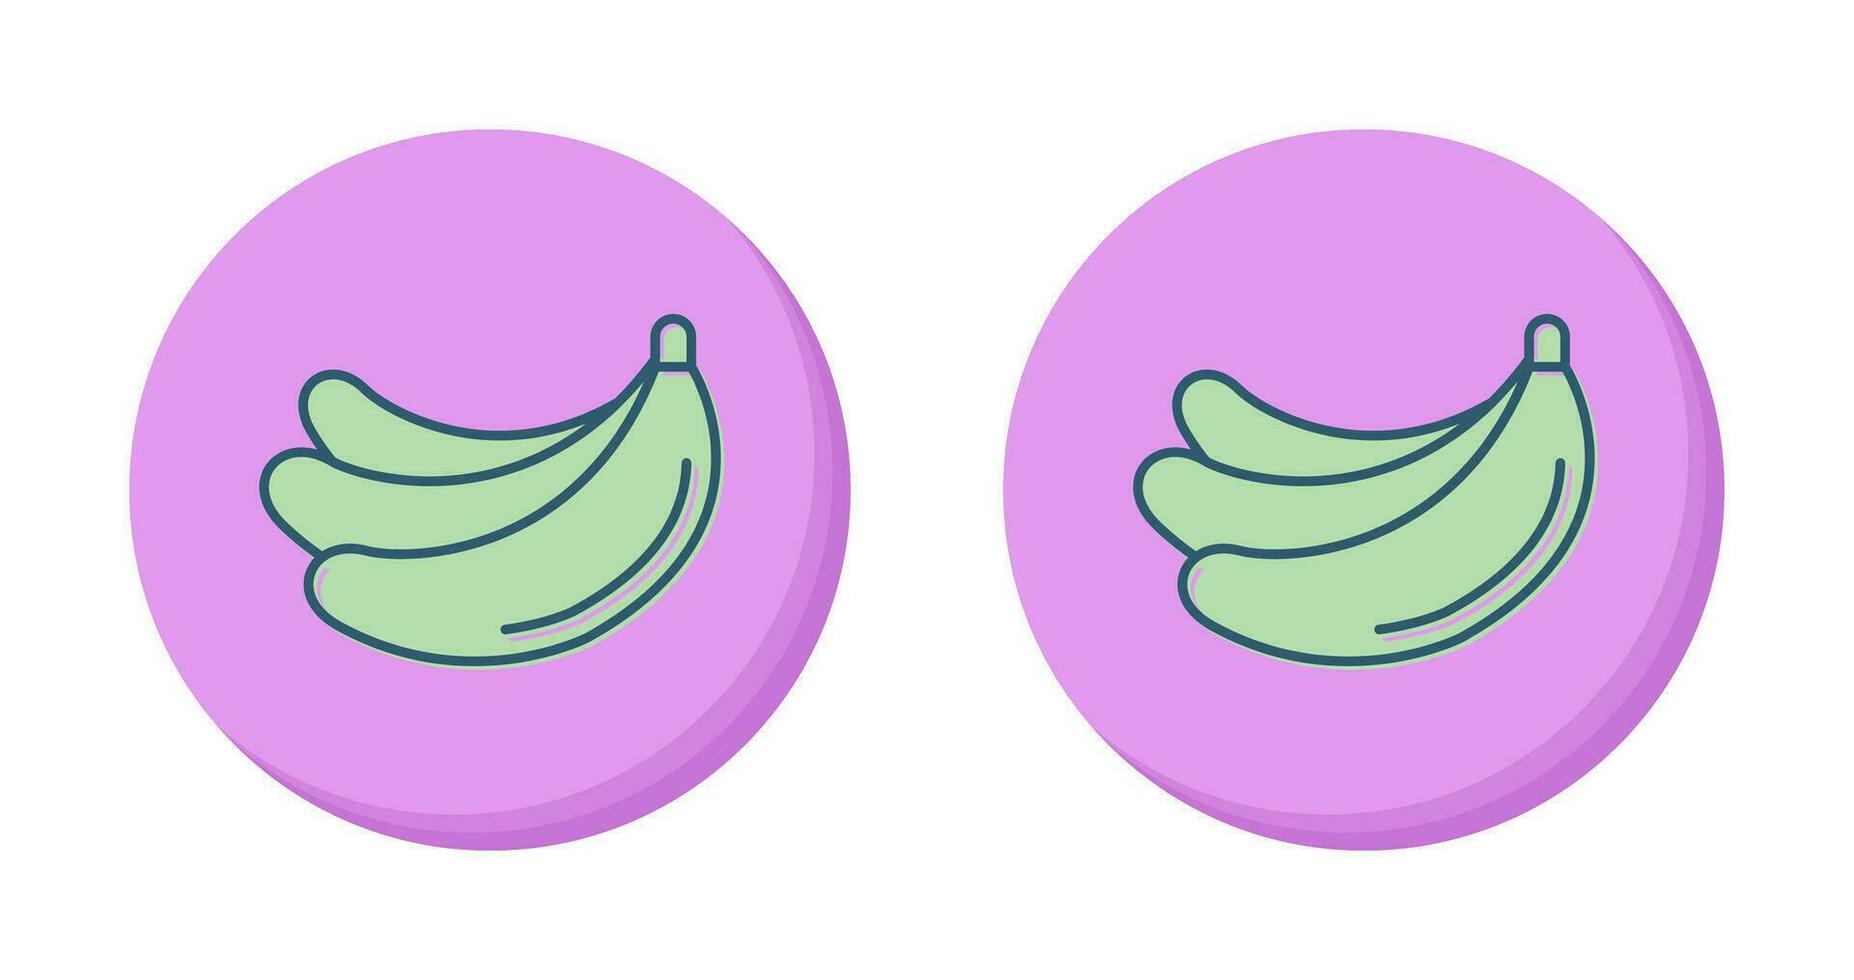 banaan vector icoon